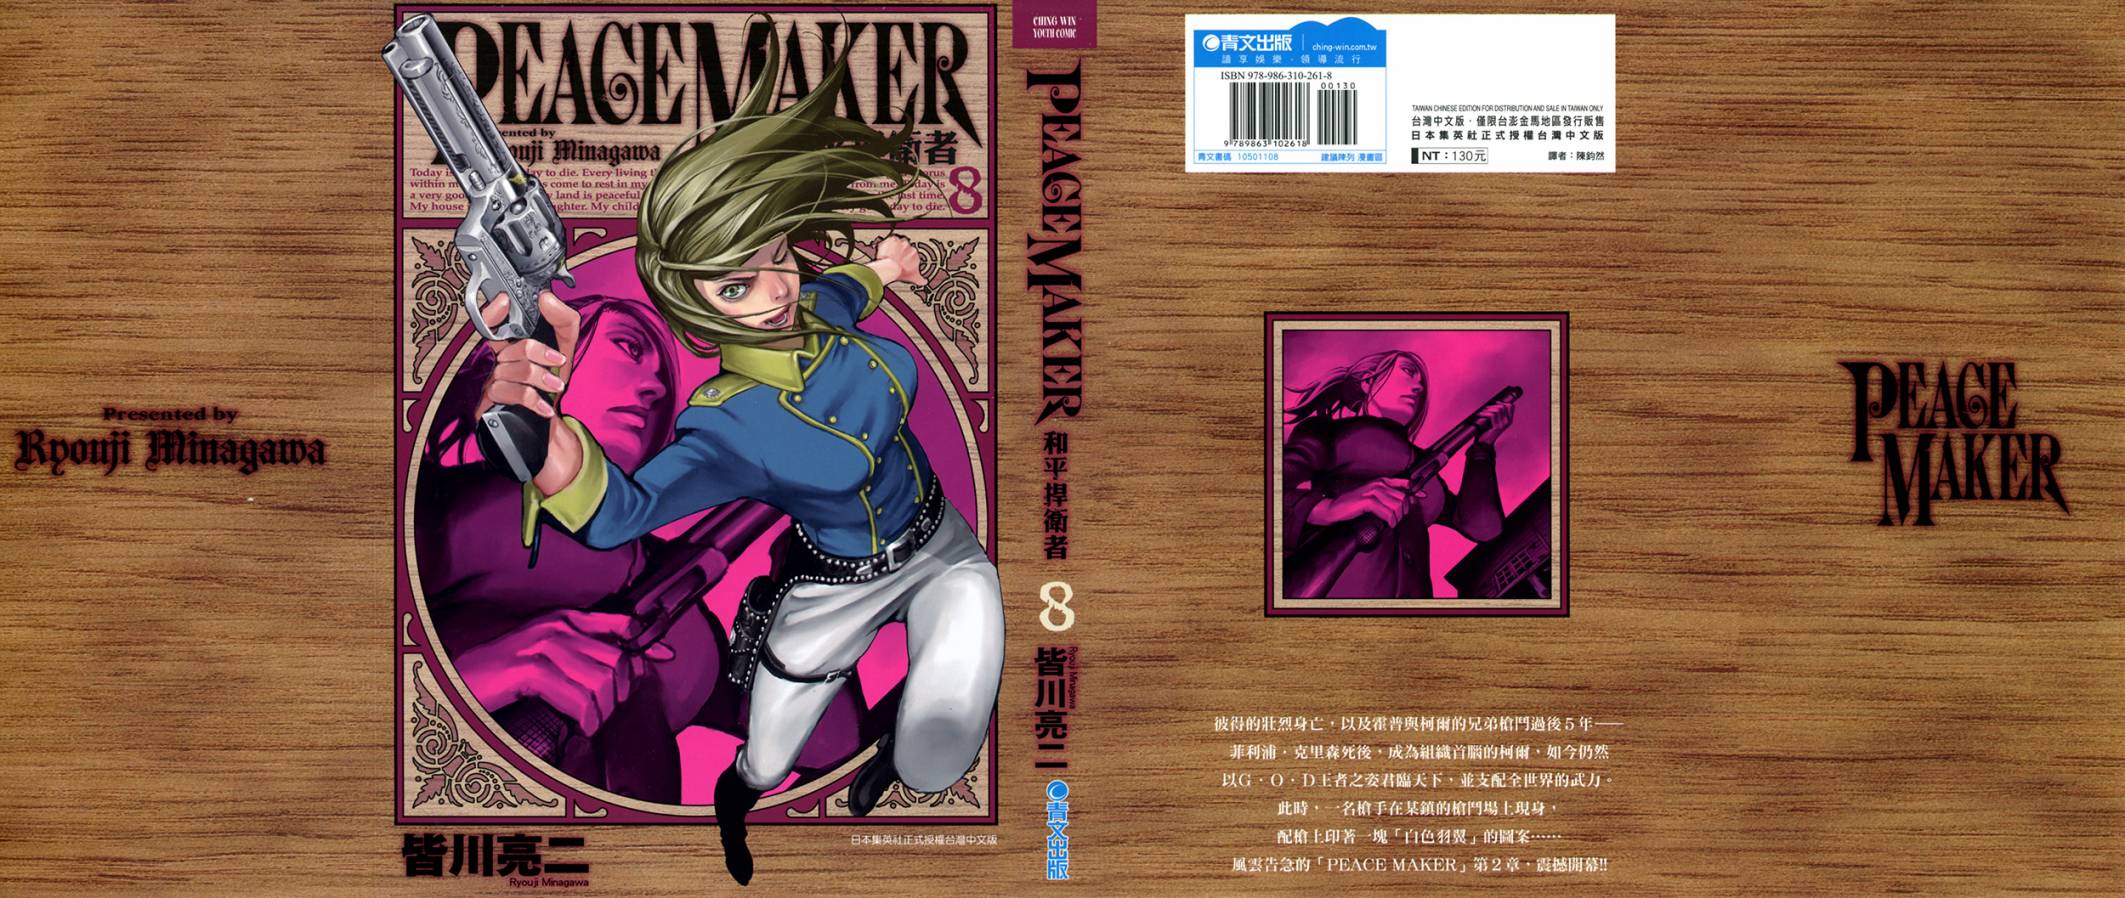 Peace Maker 第08卷 漫畫線上看 動漫戲說 Acgn Cc